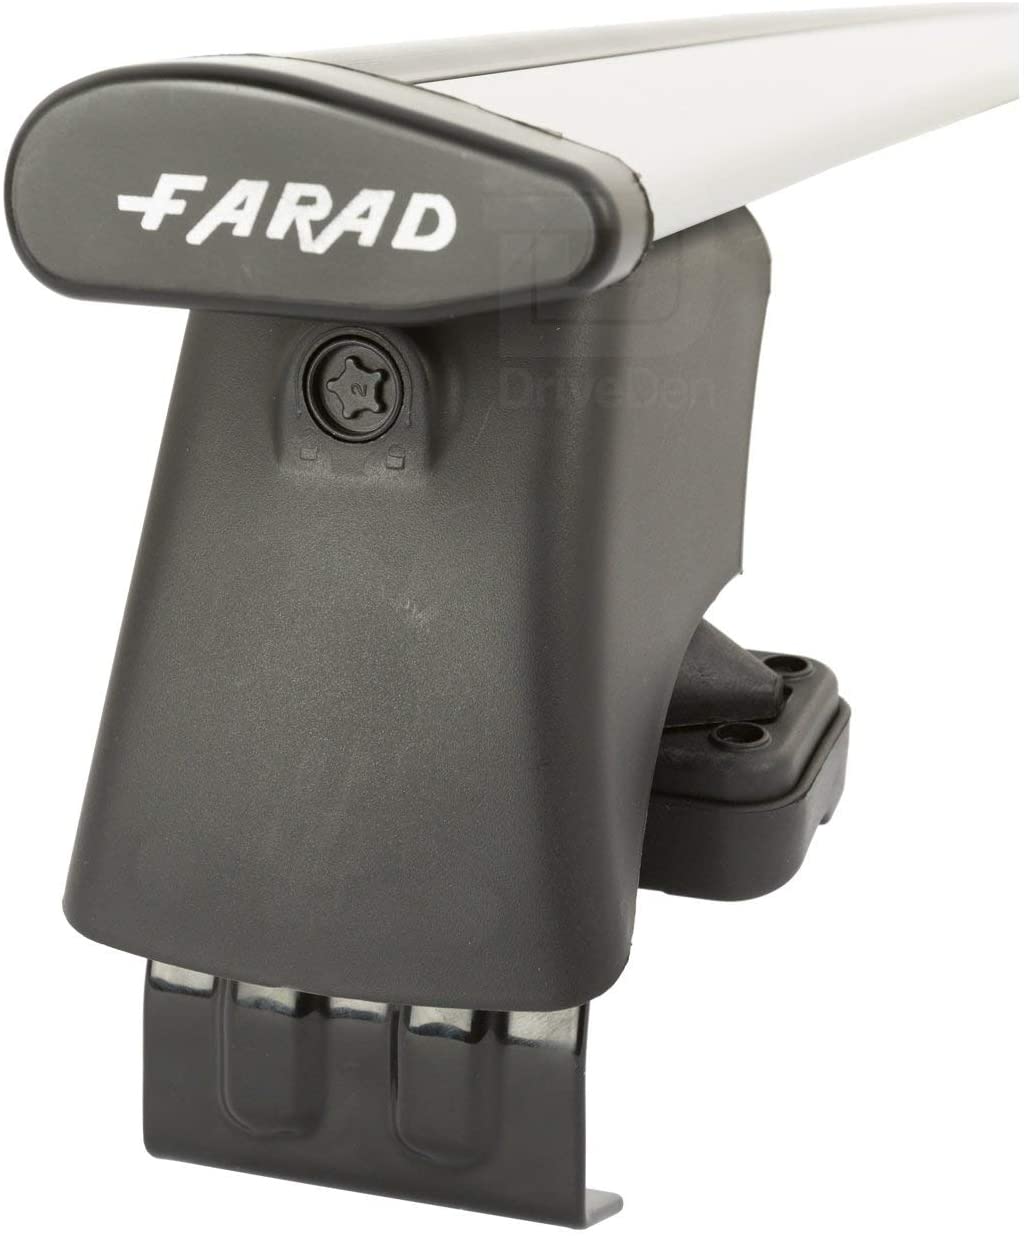 FARAD-Kit H2 per barre portatutto - Mitsubishi Colt 2005-2012 (senza corrimano)